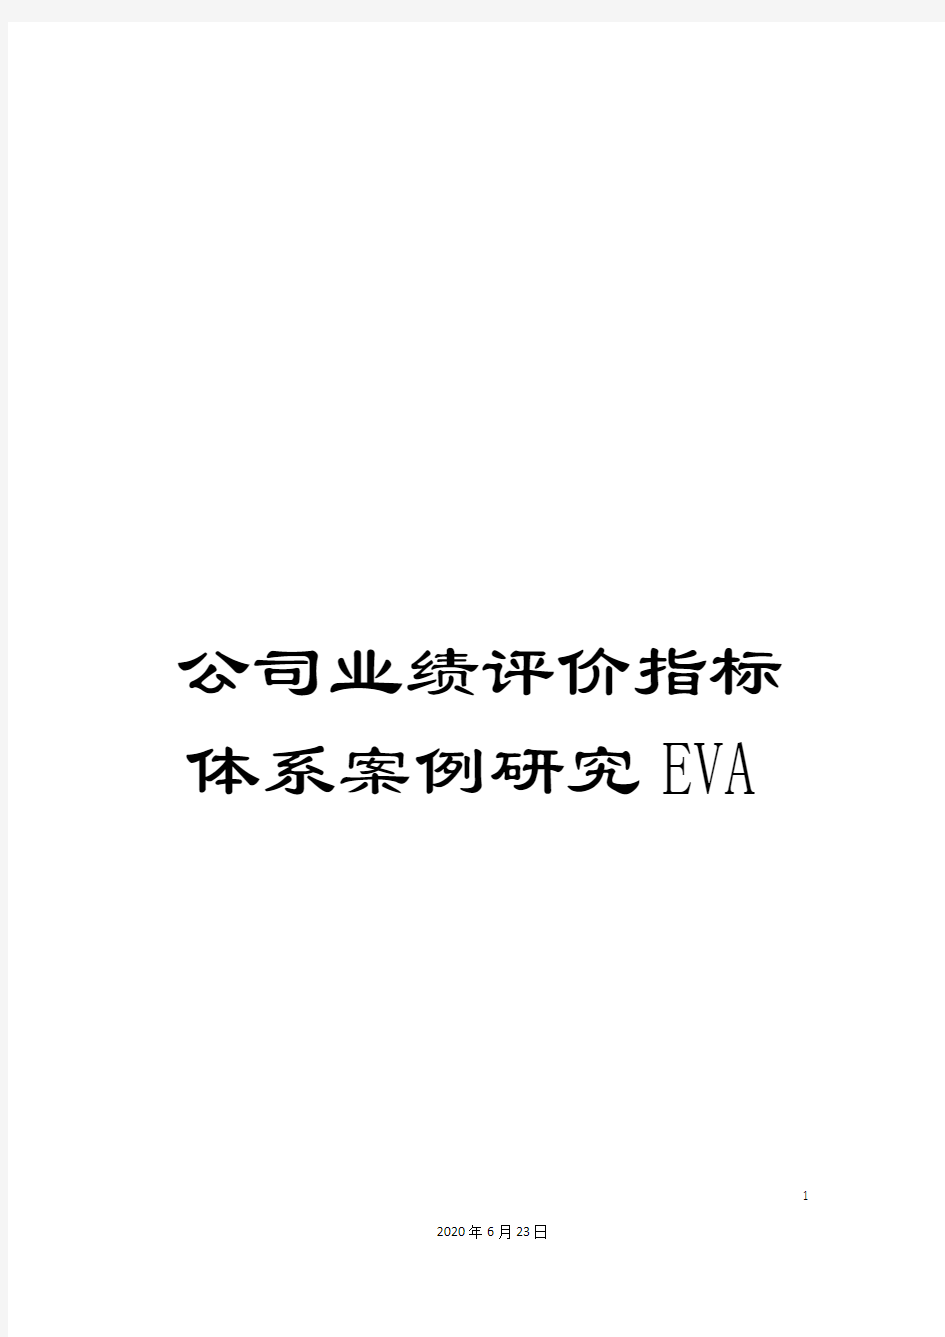 公司业绩评价指标体系案例研究EVA